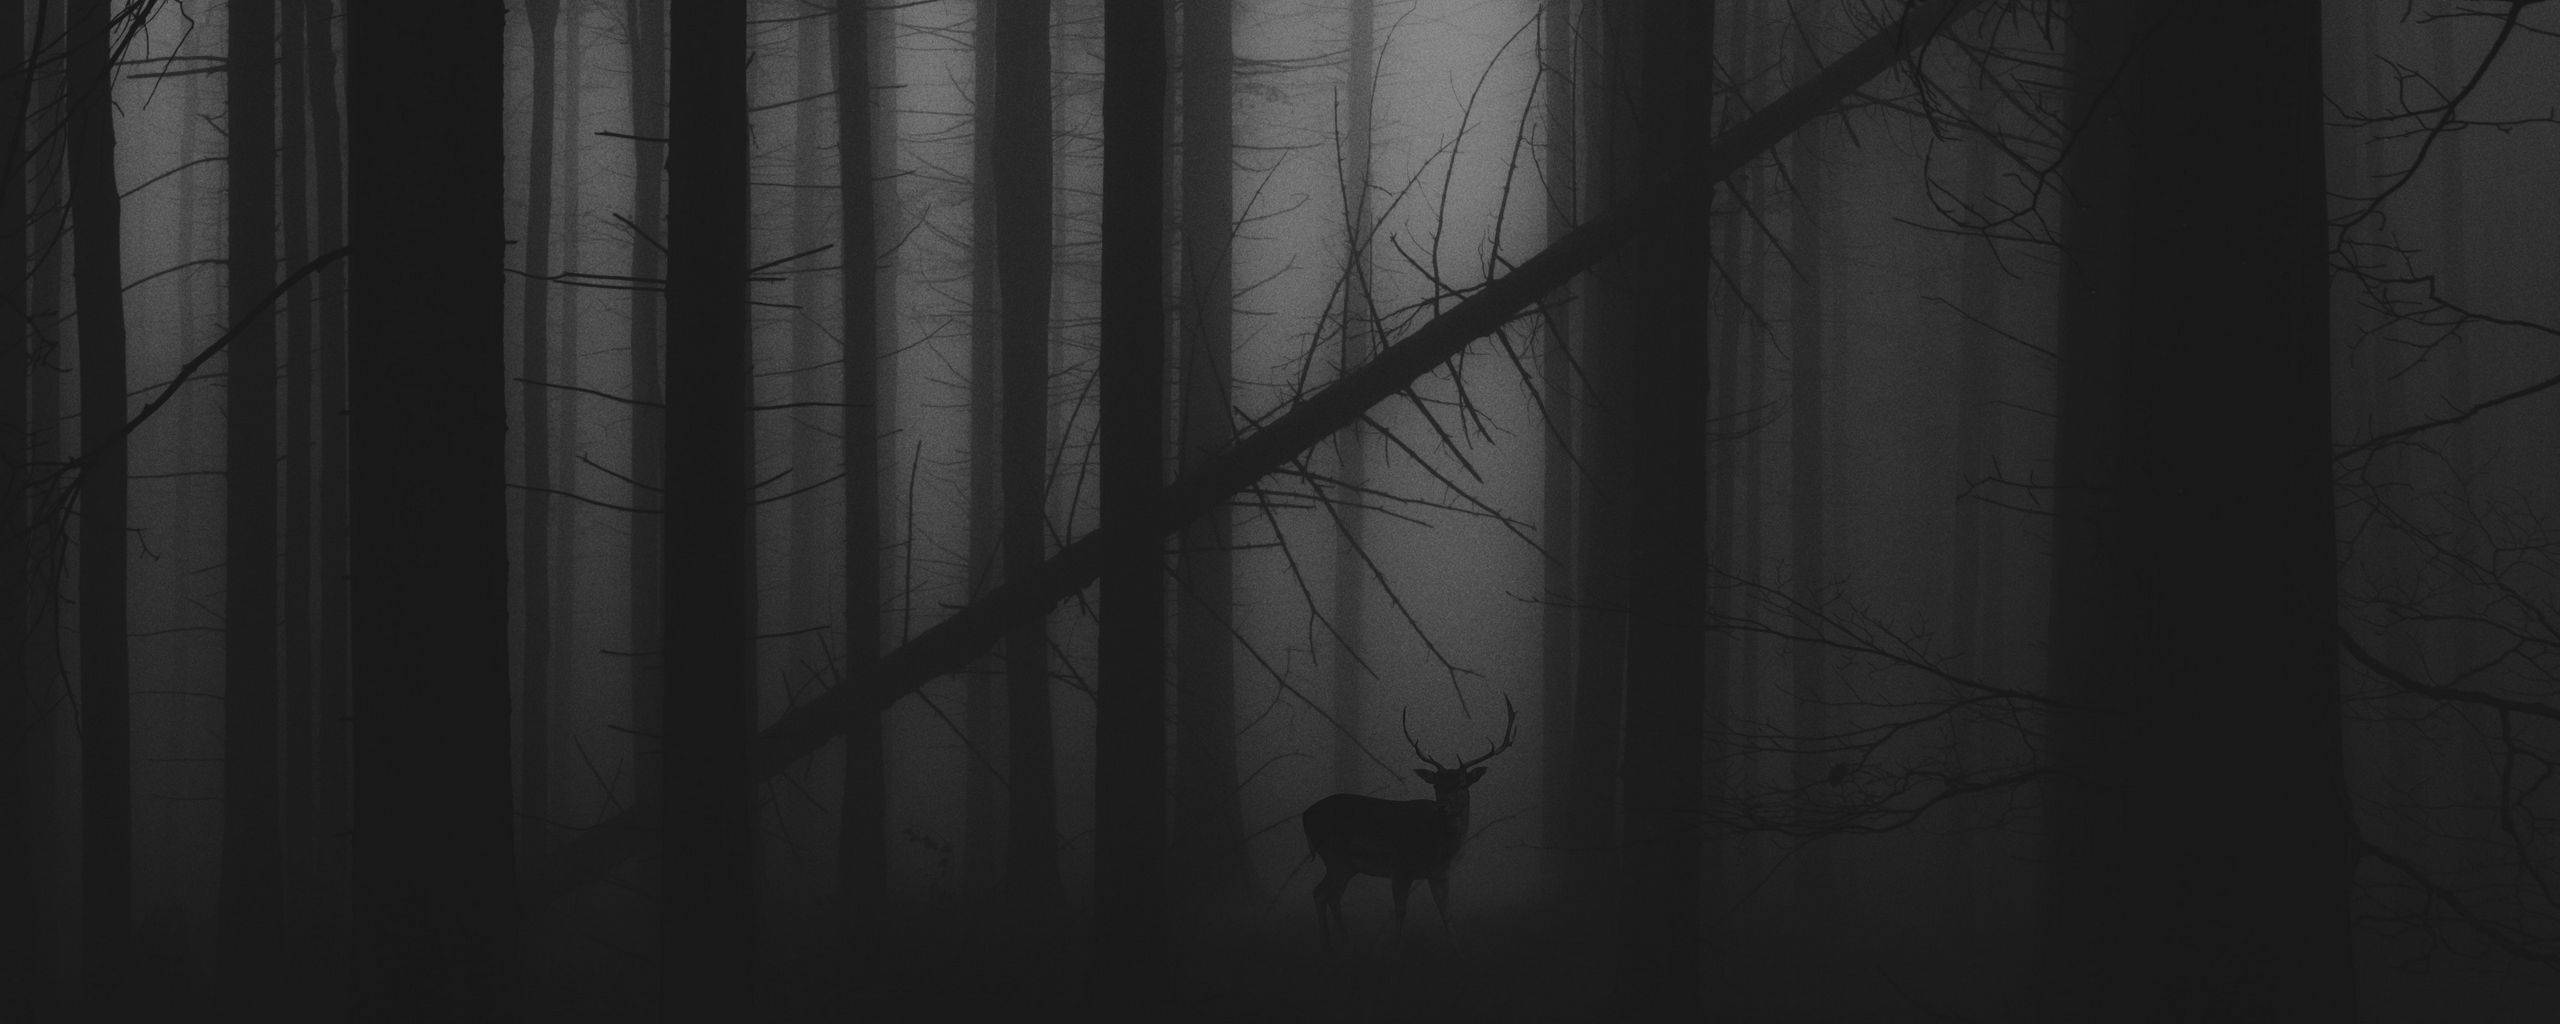 2560x1024 Wallpaper forest, fog, deer, bw, gloomy